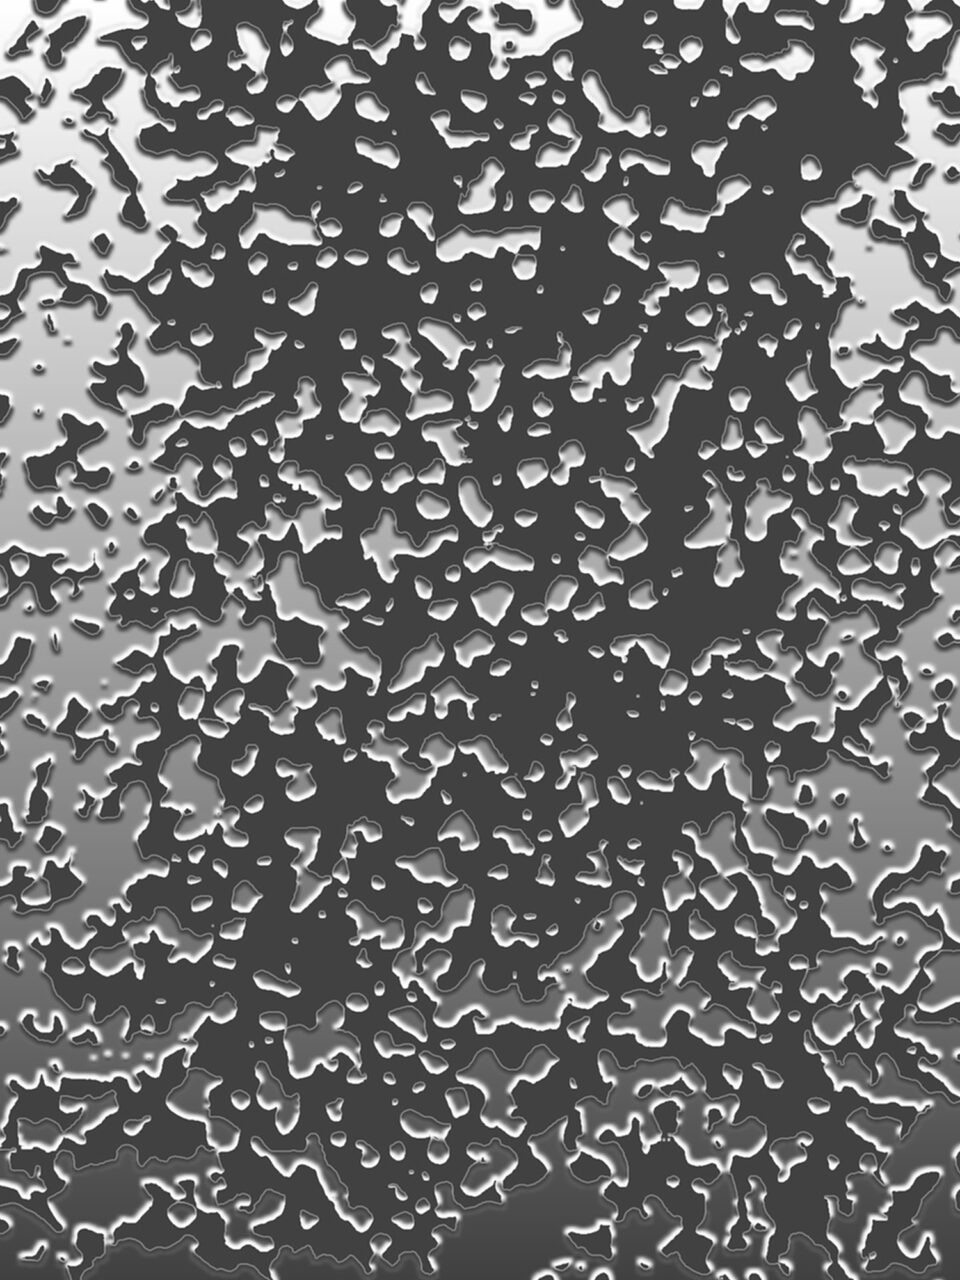 Oelteppich, 2022, Reihe Umweltverschmutzung, Experimental Fine Art Photography, Mixed Media, 120 x 80 cm, Colorpigment on Aludibond, matt, mit Schattenfuge gerahmt, rückseitig signiert